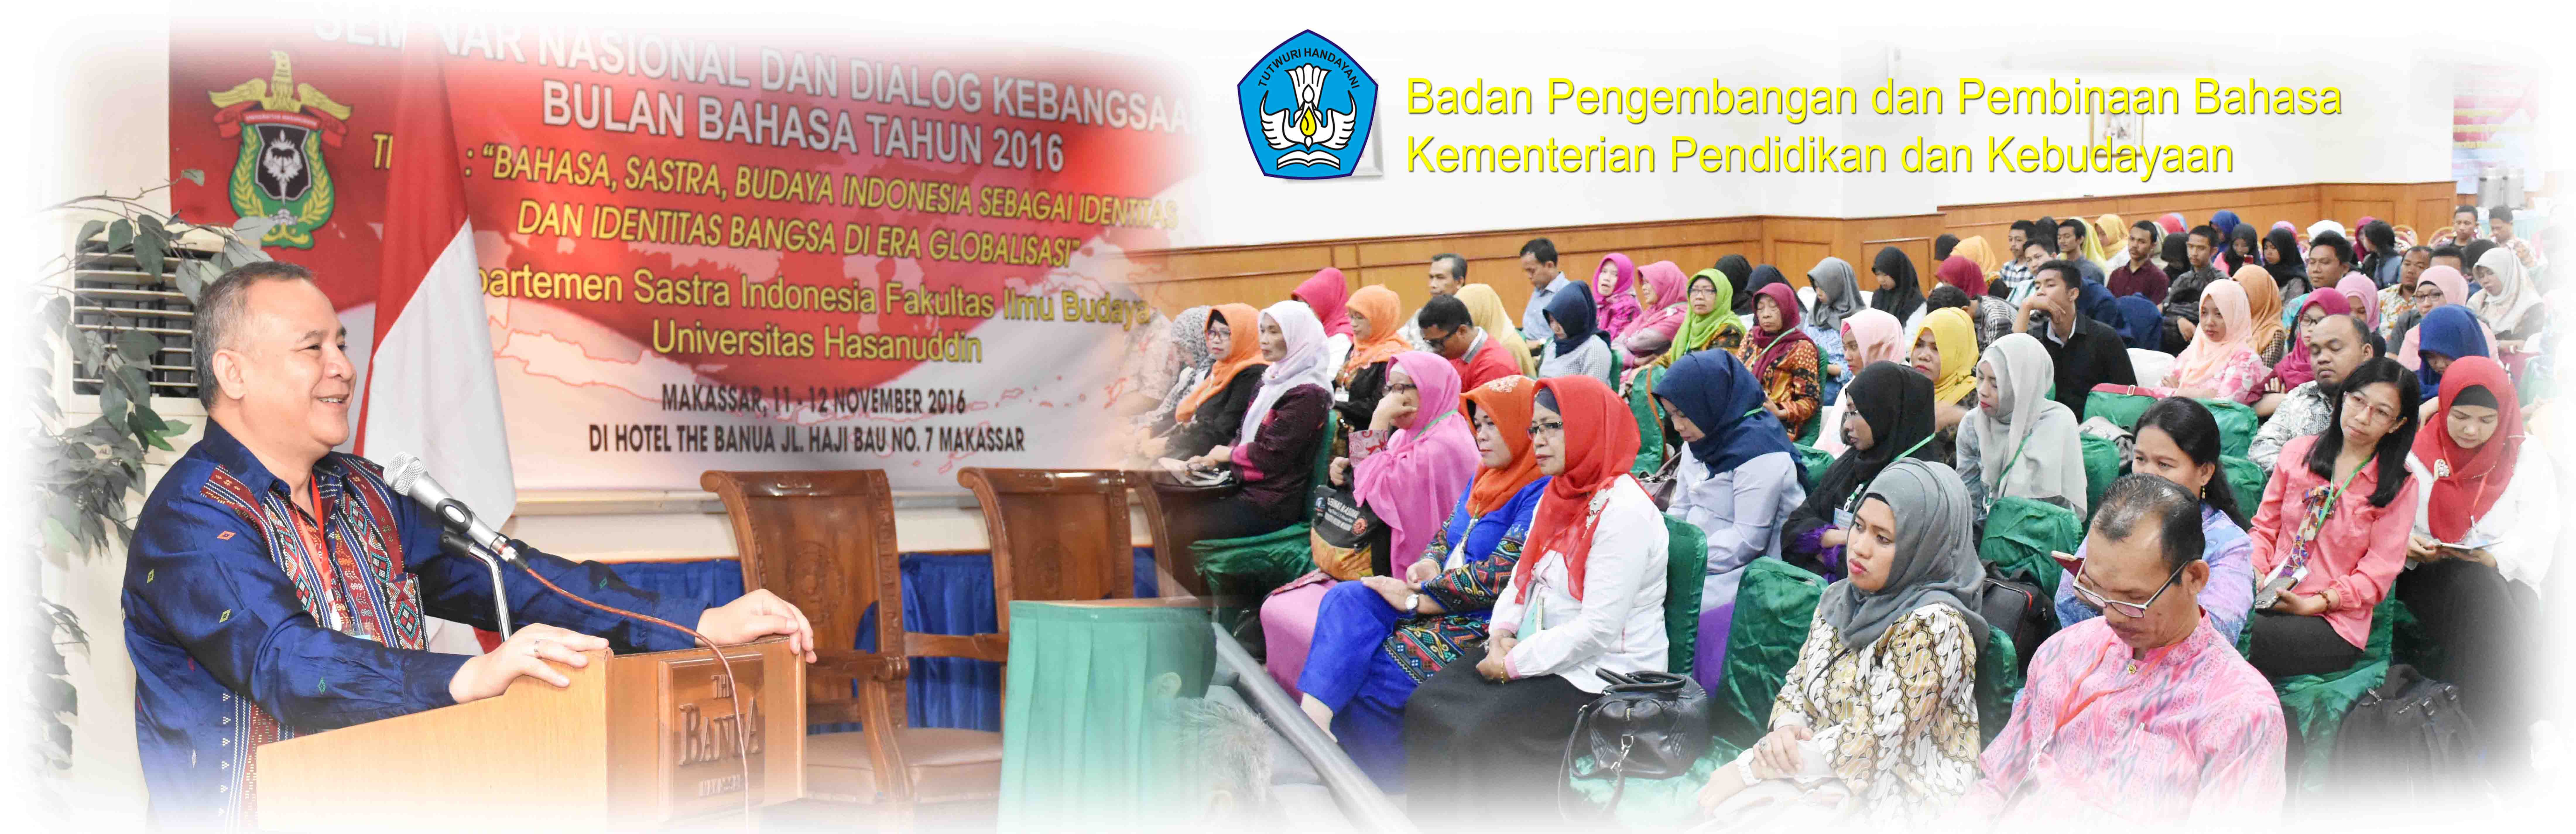 Seminar Nasional Bulan Bahasa: Bahasa Indonesia sebagai Identitas dan Integrasi Bangsa di Era Globalisasi